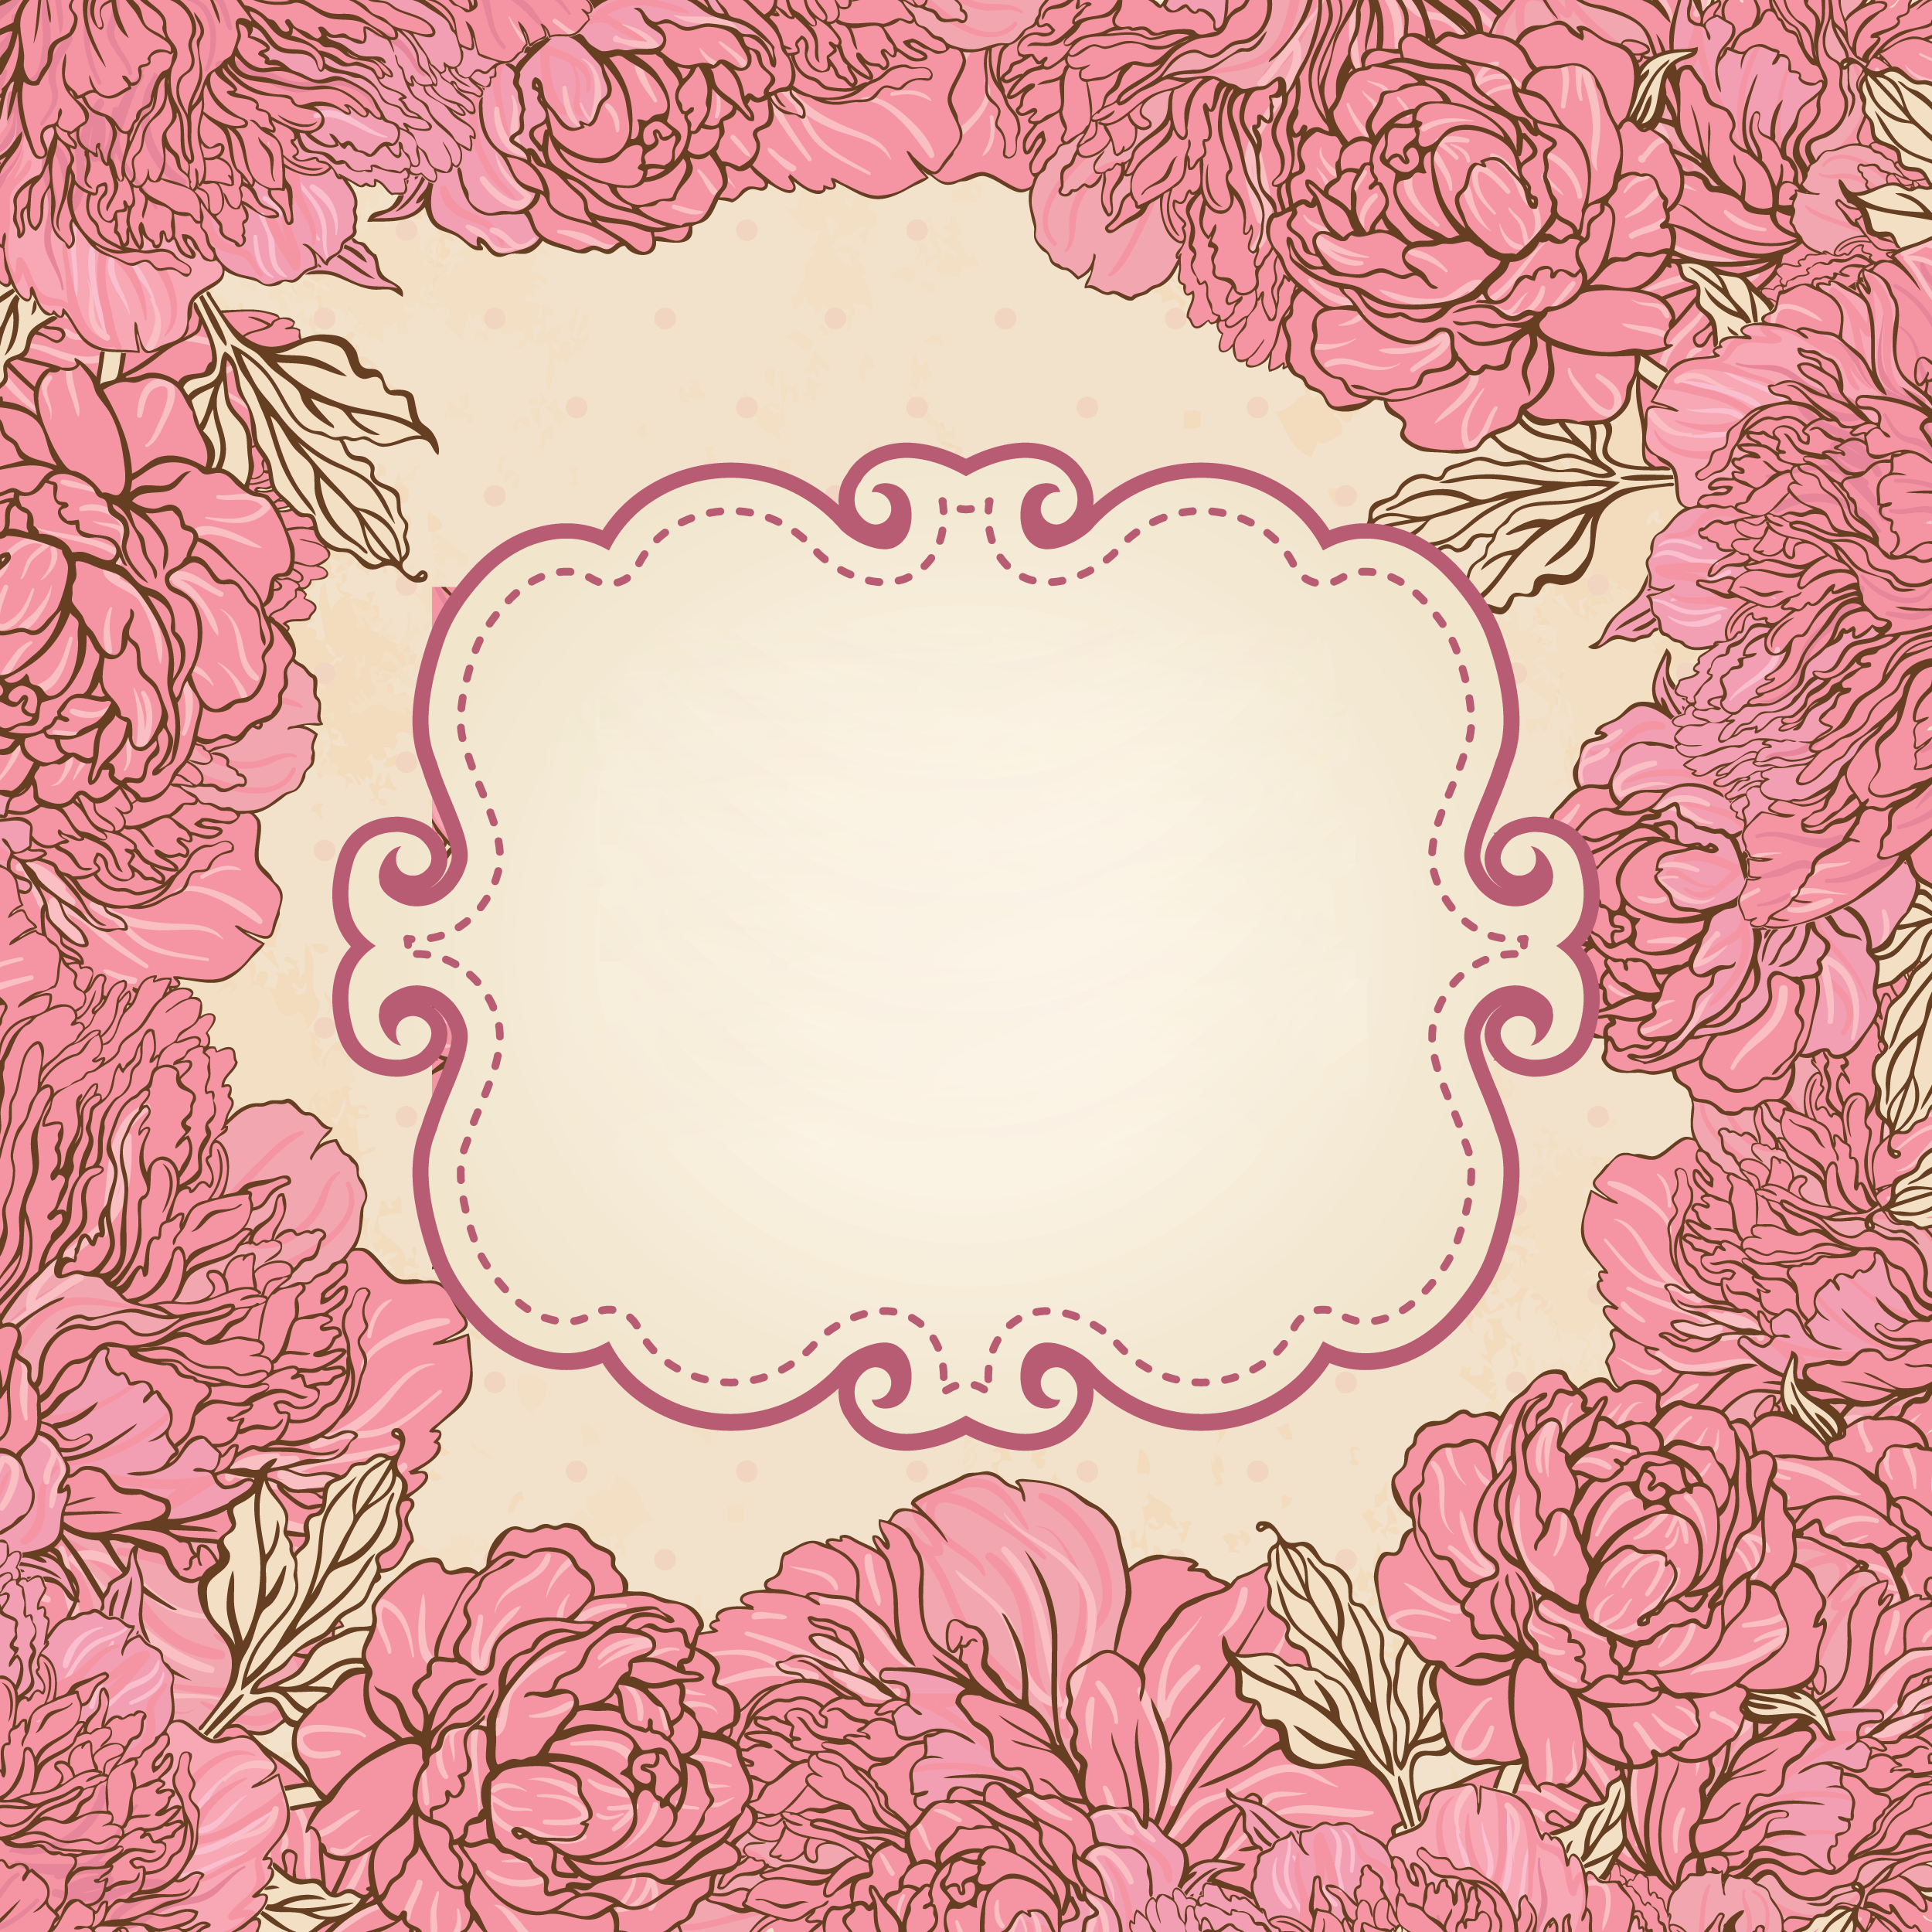 花のイラスト フリー素材 壁紙 背景no 762 手書き風 赤紫 窓枠